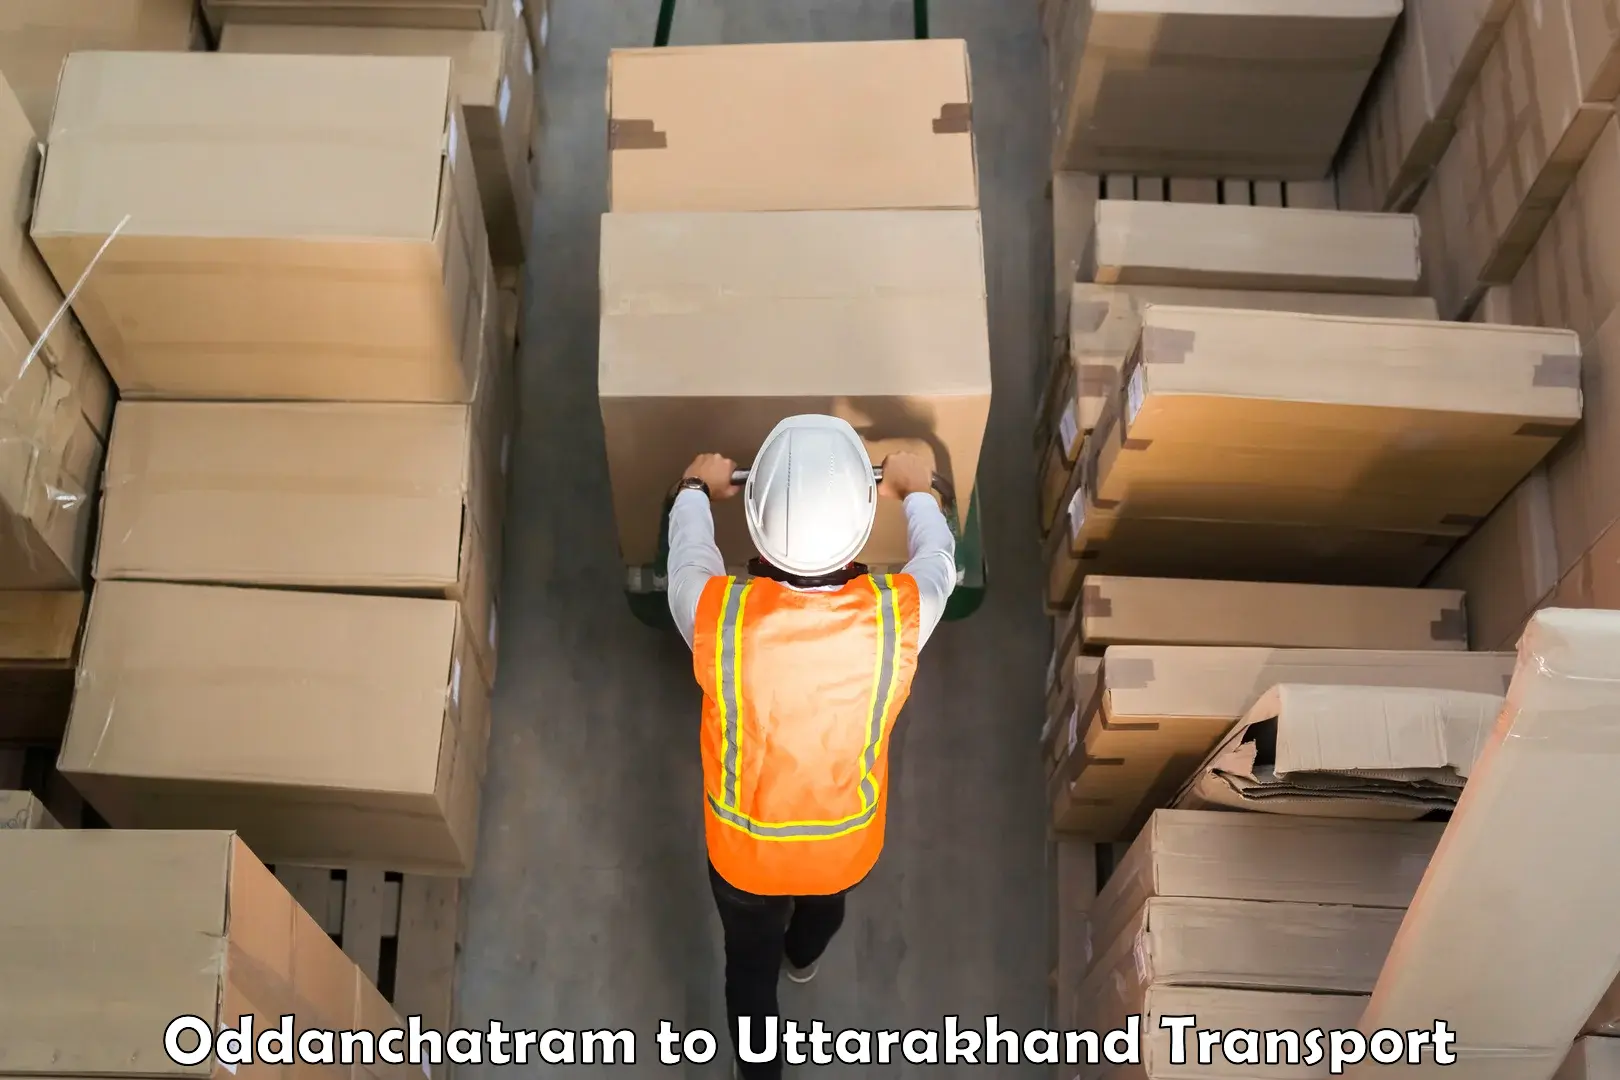 Furniture transport service Oddanchatram to Udham Singh Nagar